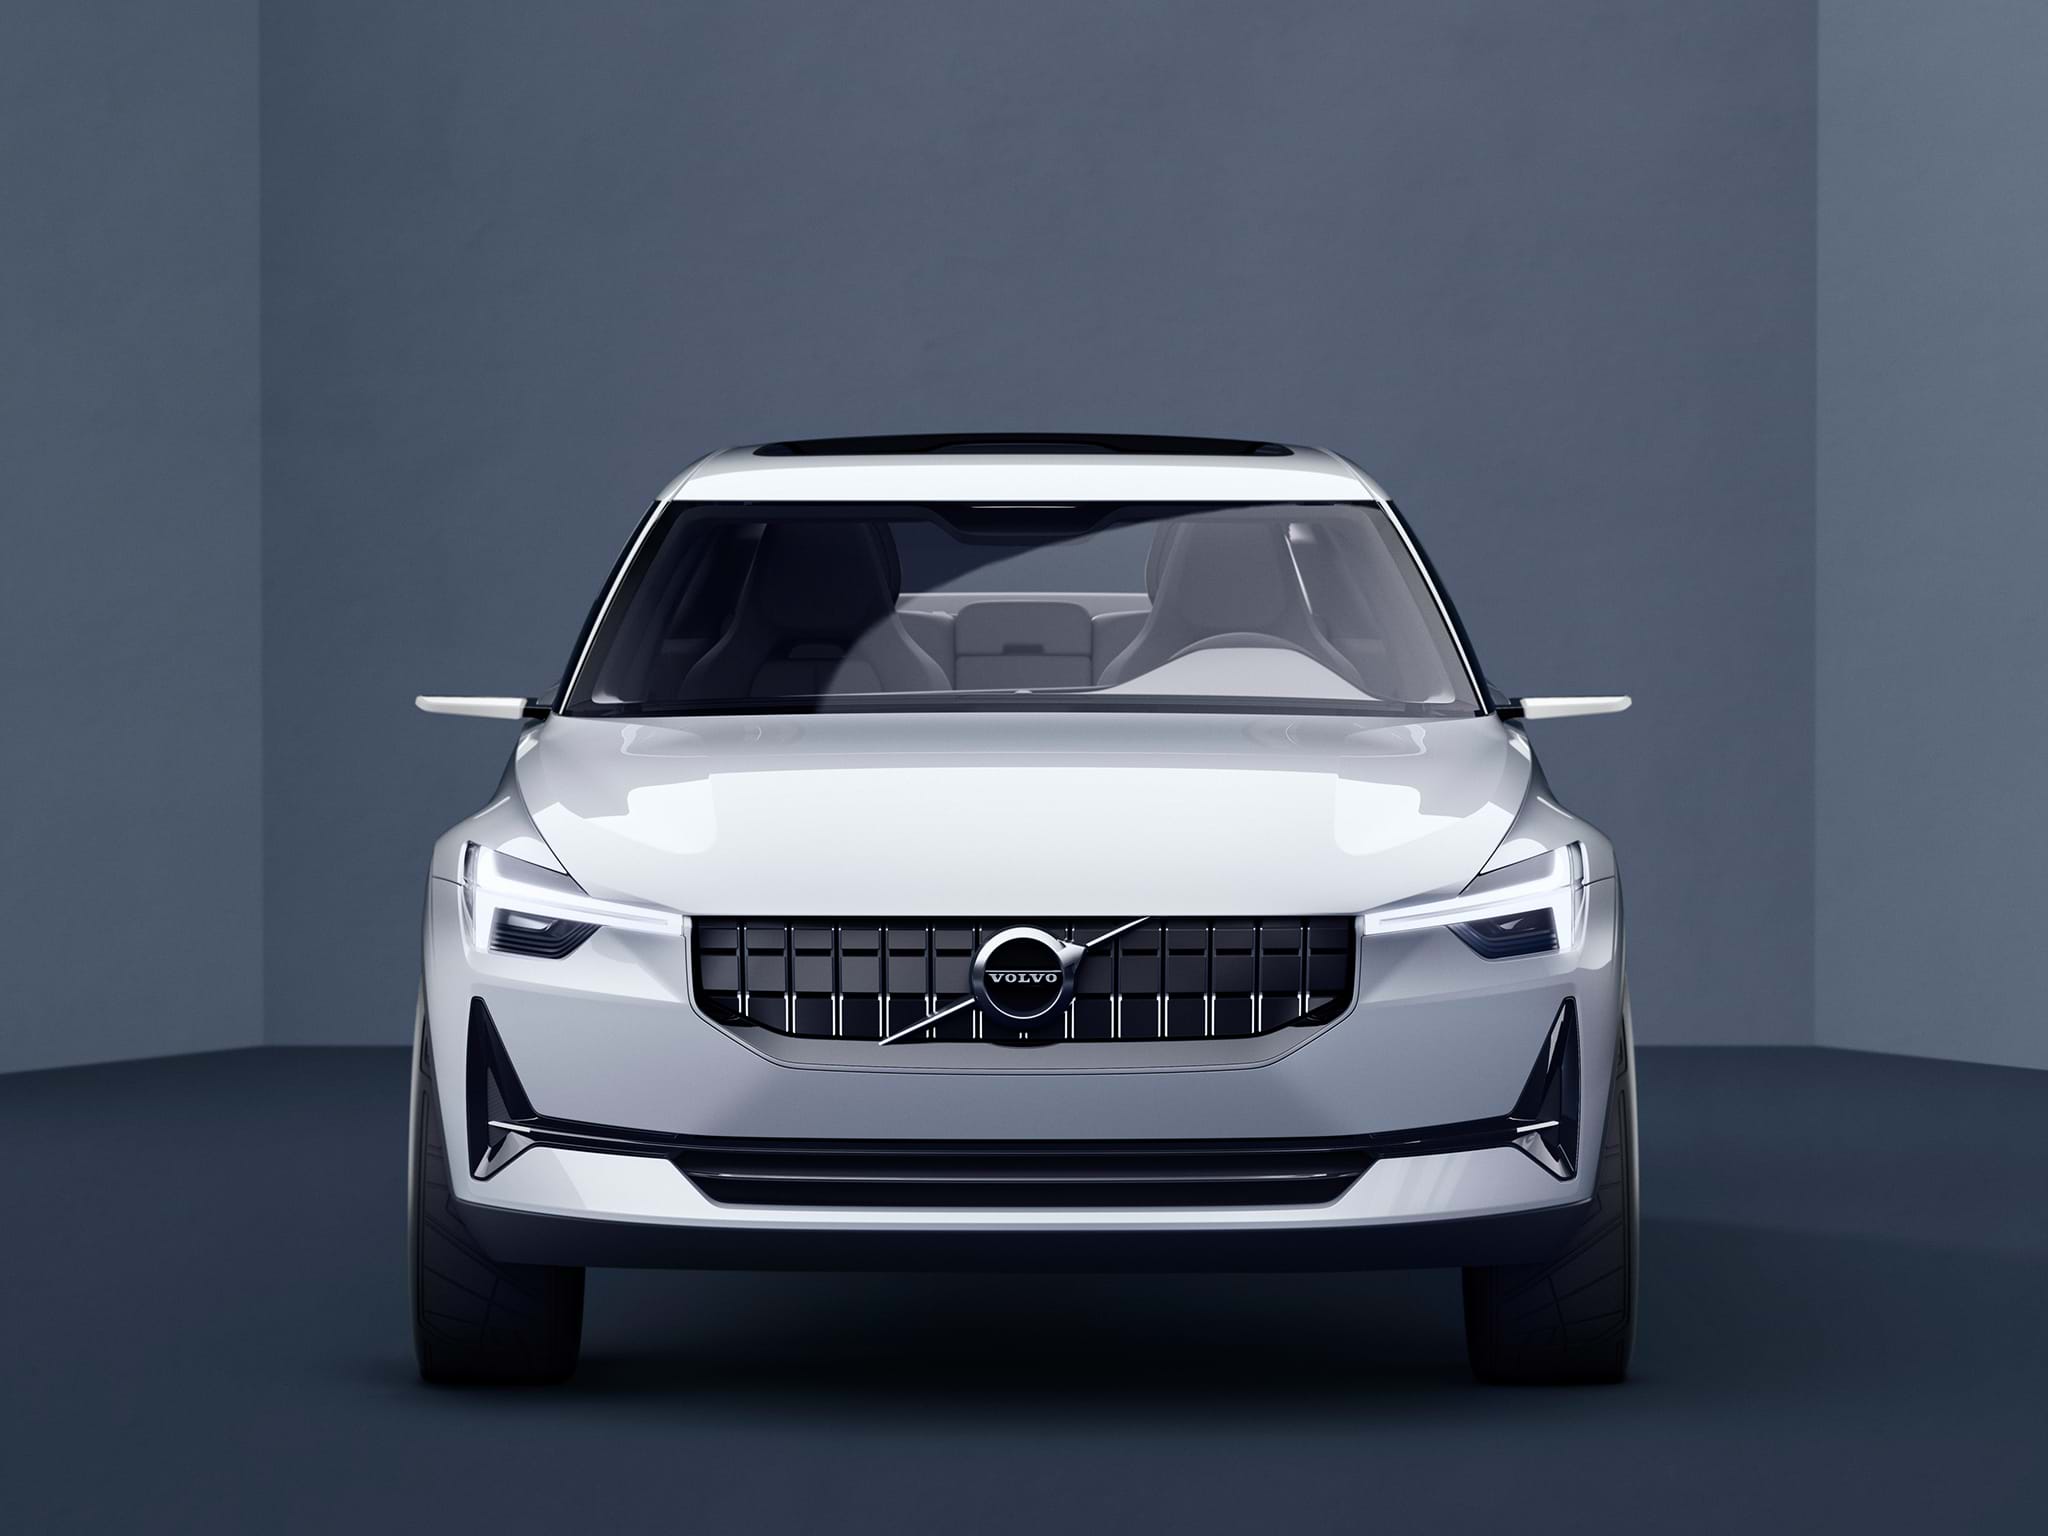 Valge Volvo Concept 40 sedaankerega kontseptsioonauto eestvaates